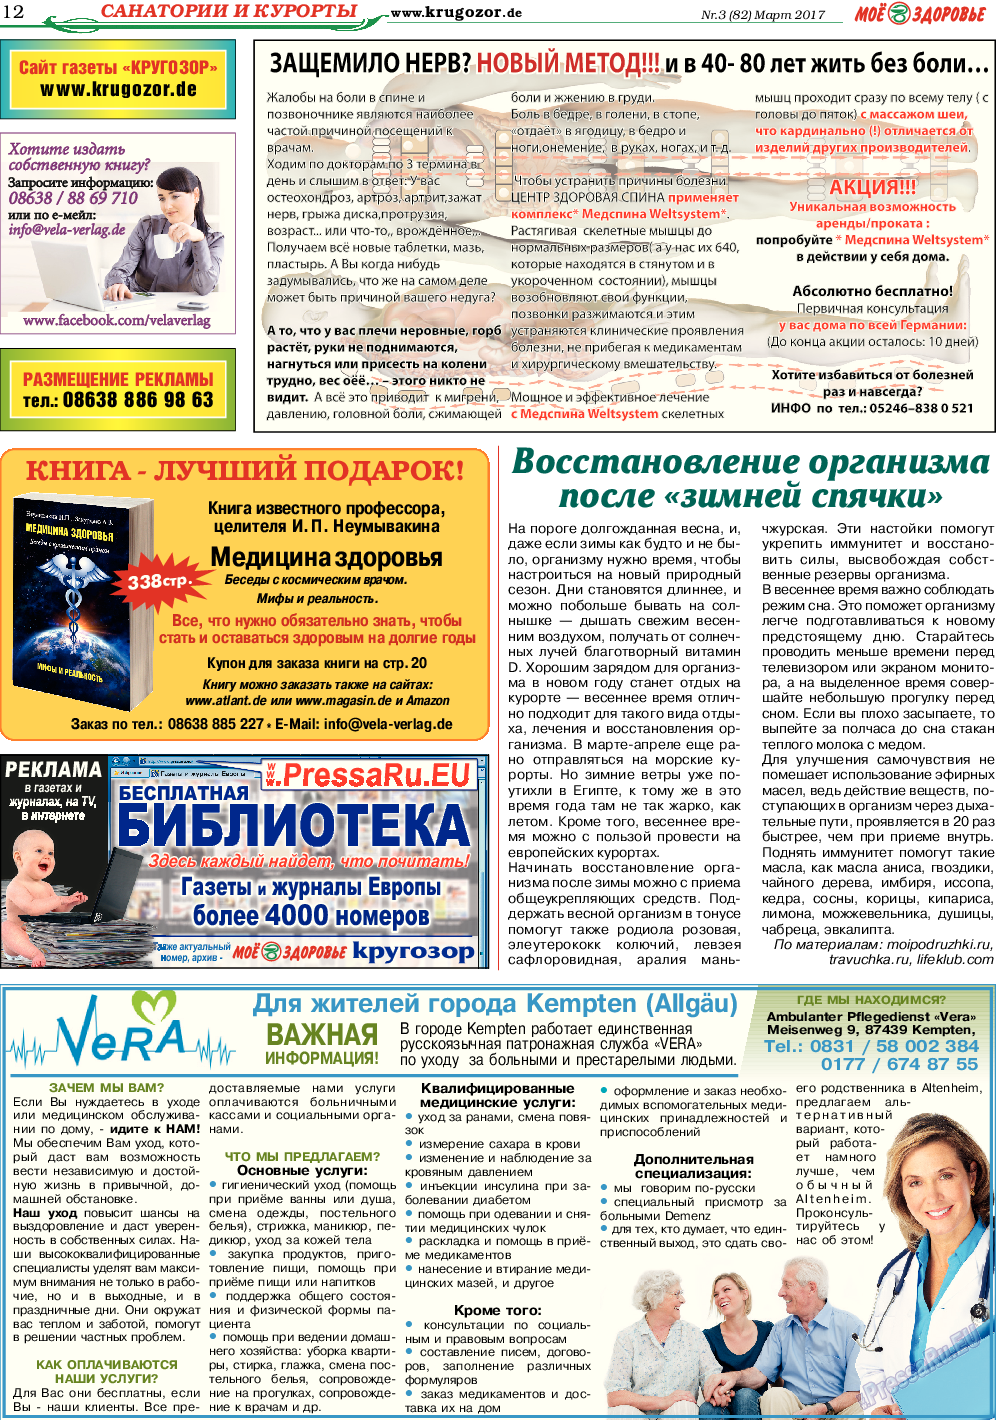 Кругозор, газета. 2017 №3 стр.12